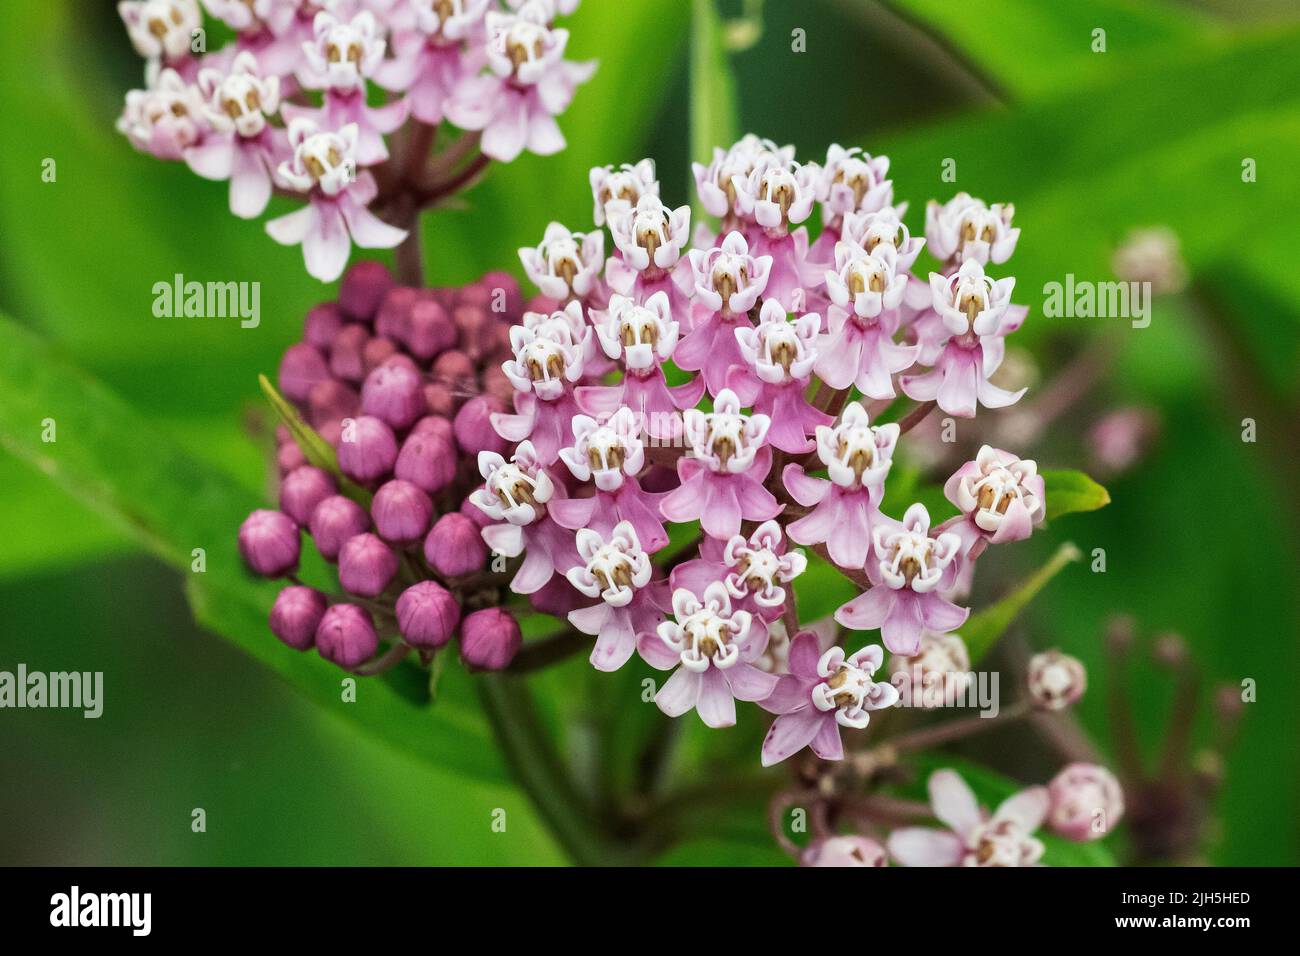 Common milkweed plant in bloom Stock Photo